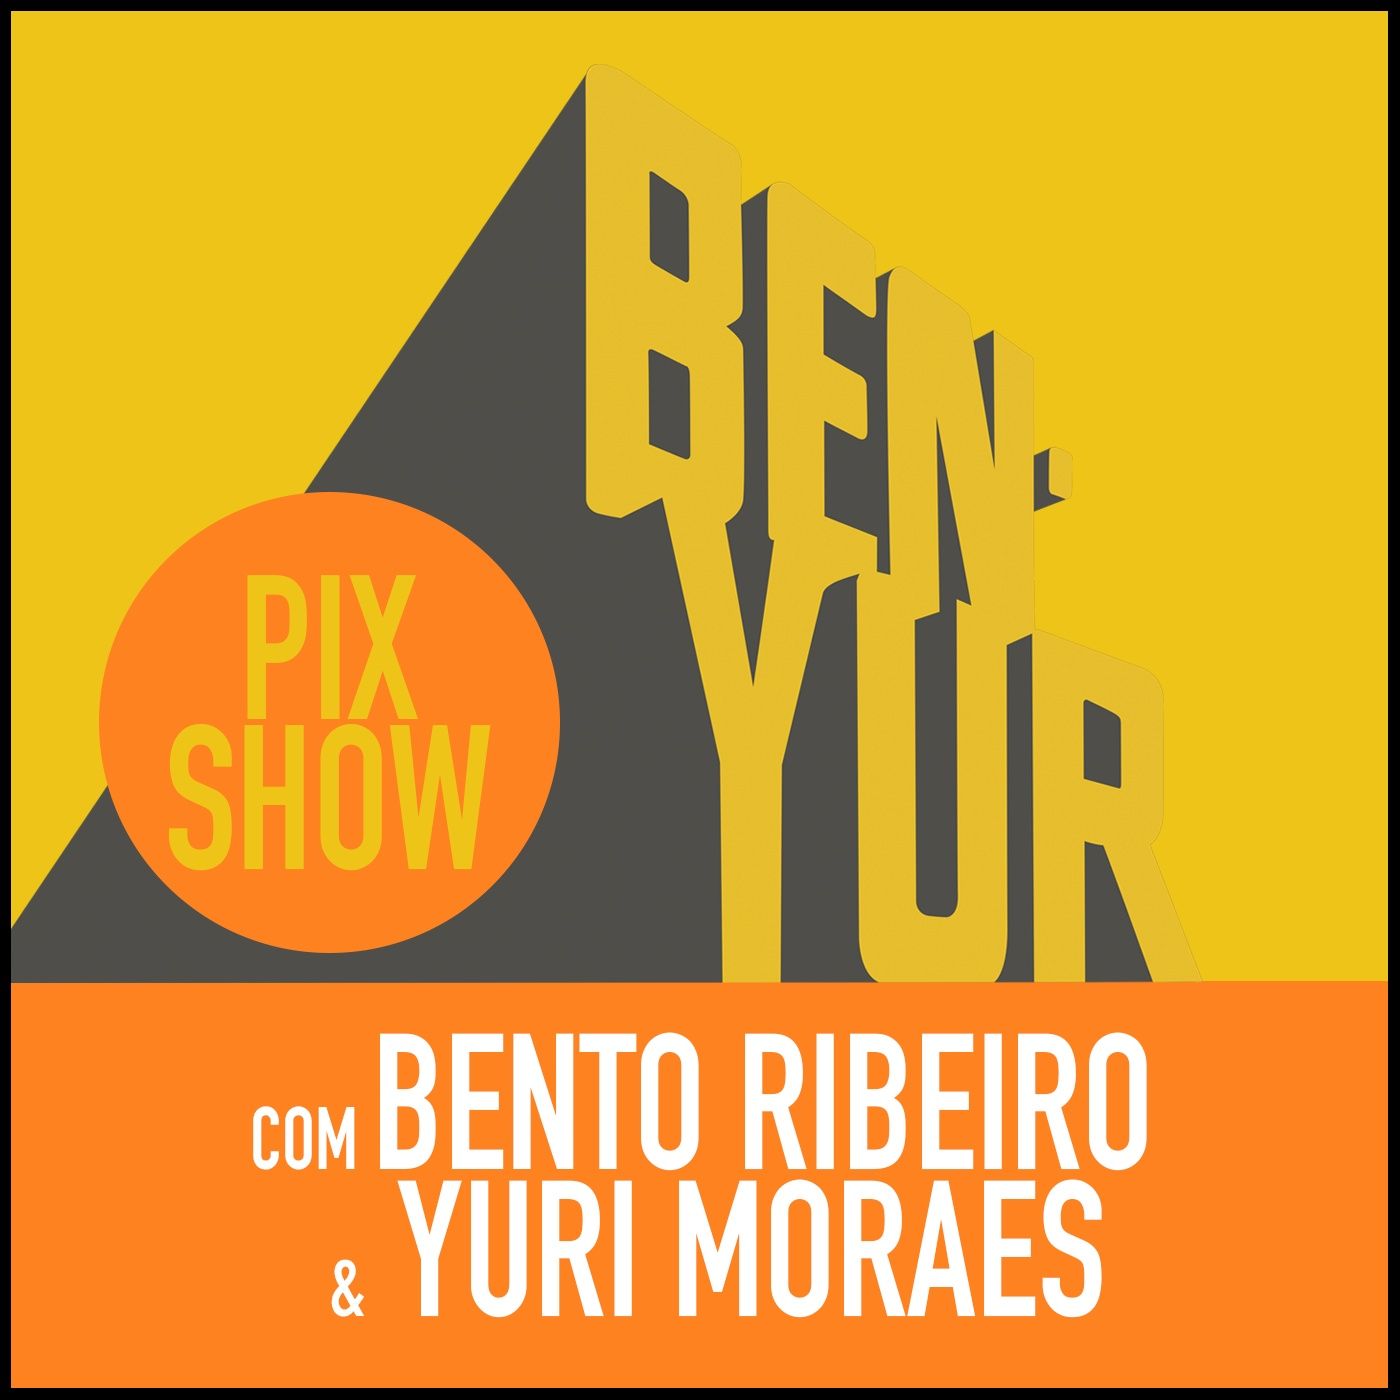 BEN-YUR PIXSHOW #090 com Bento Ribeiro & Yuri Moraes